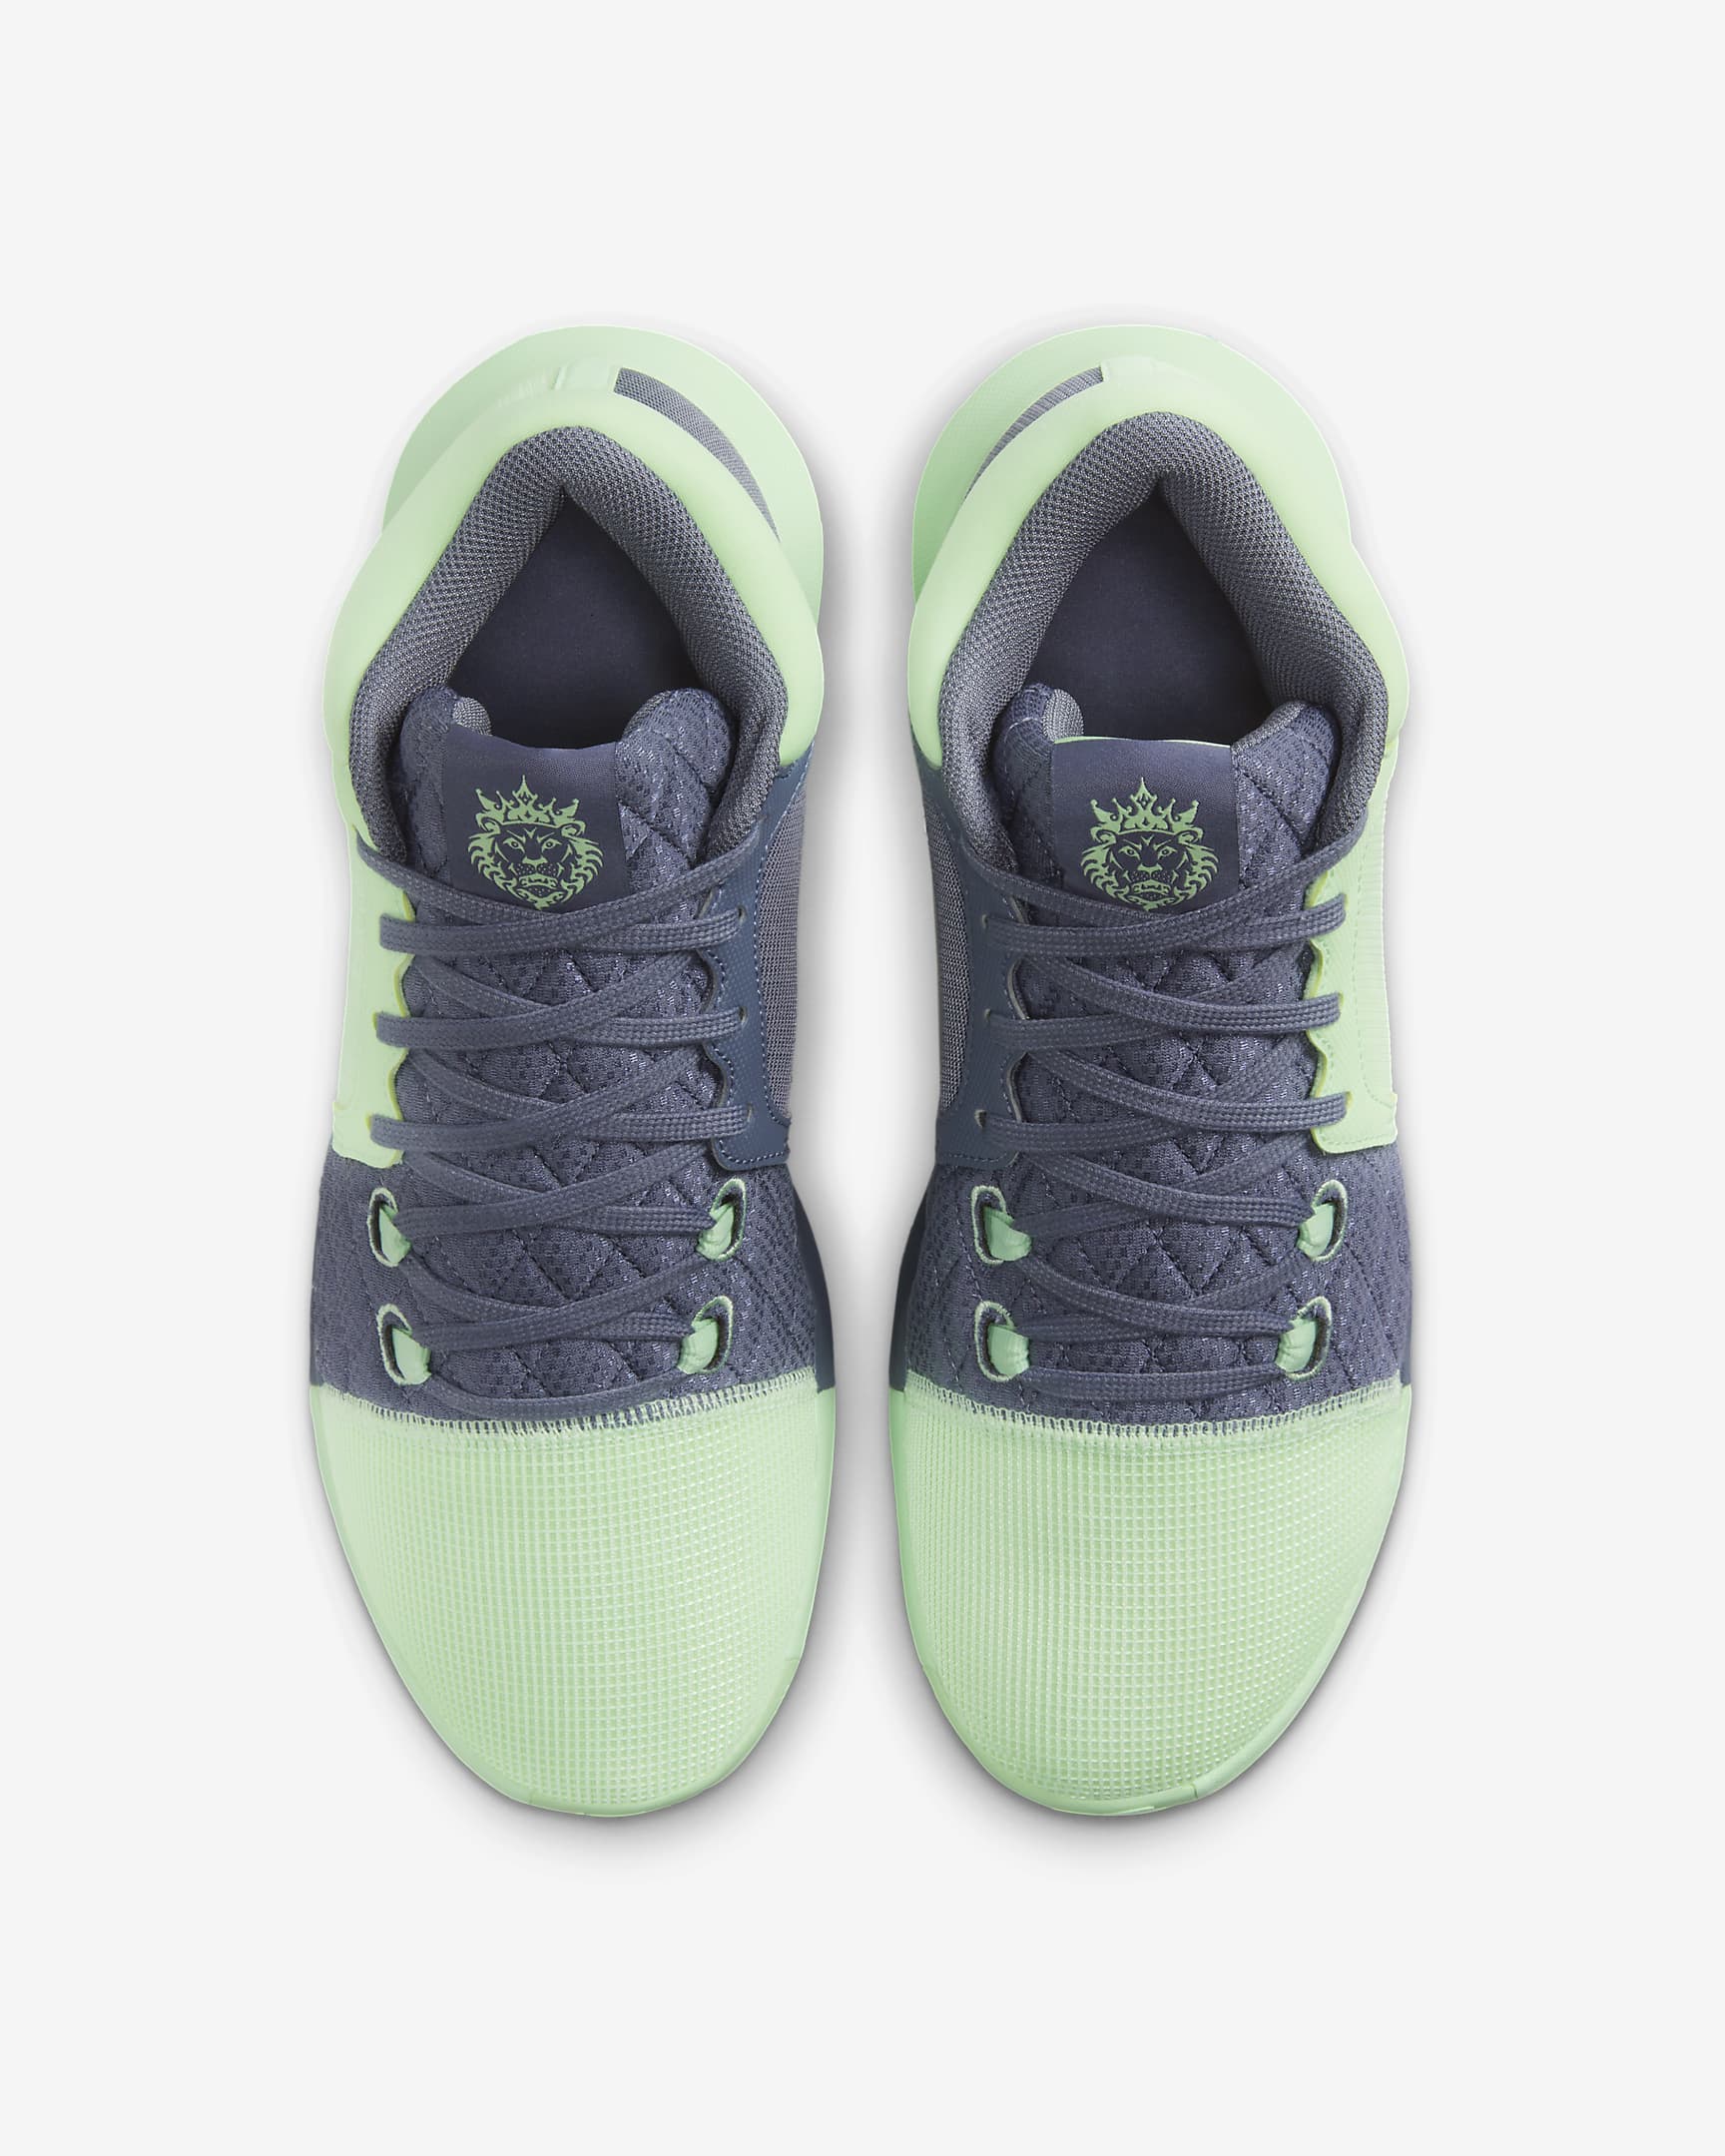 LeBron Witness 8 EP Basketball Shoes. Nike PH